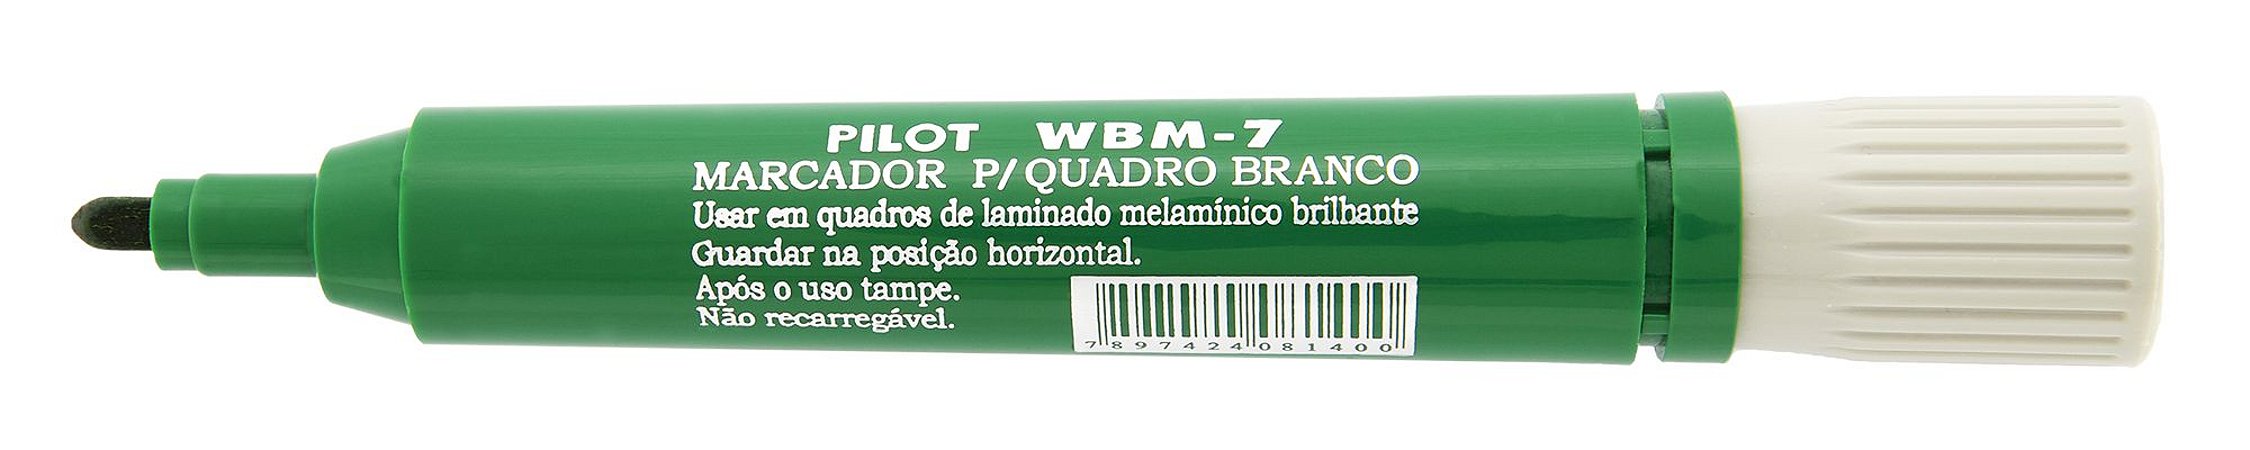 MARCADOR PARA QUADRO BRANCO WBM-7 VERDE - PILOT